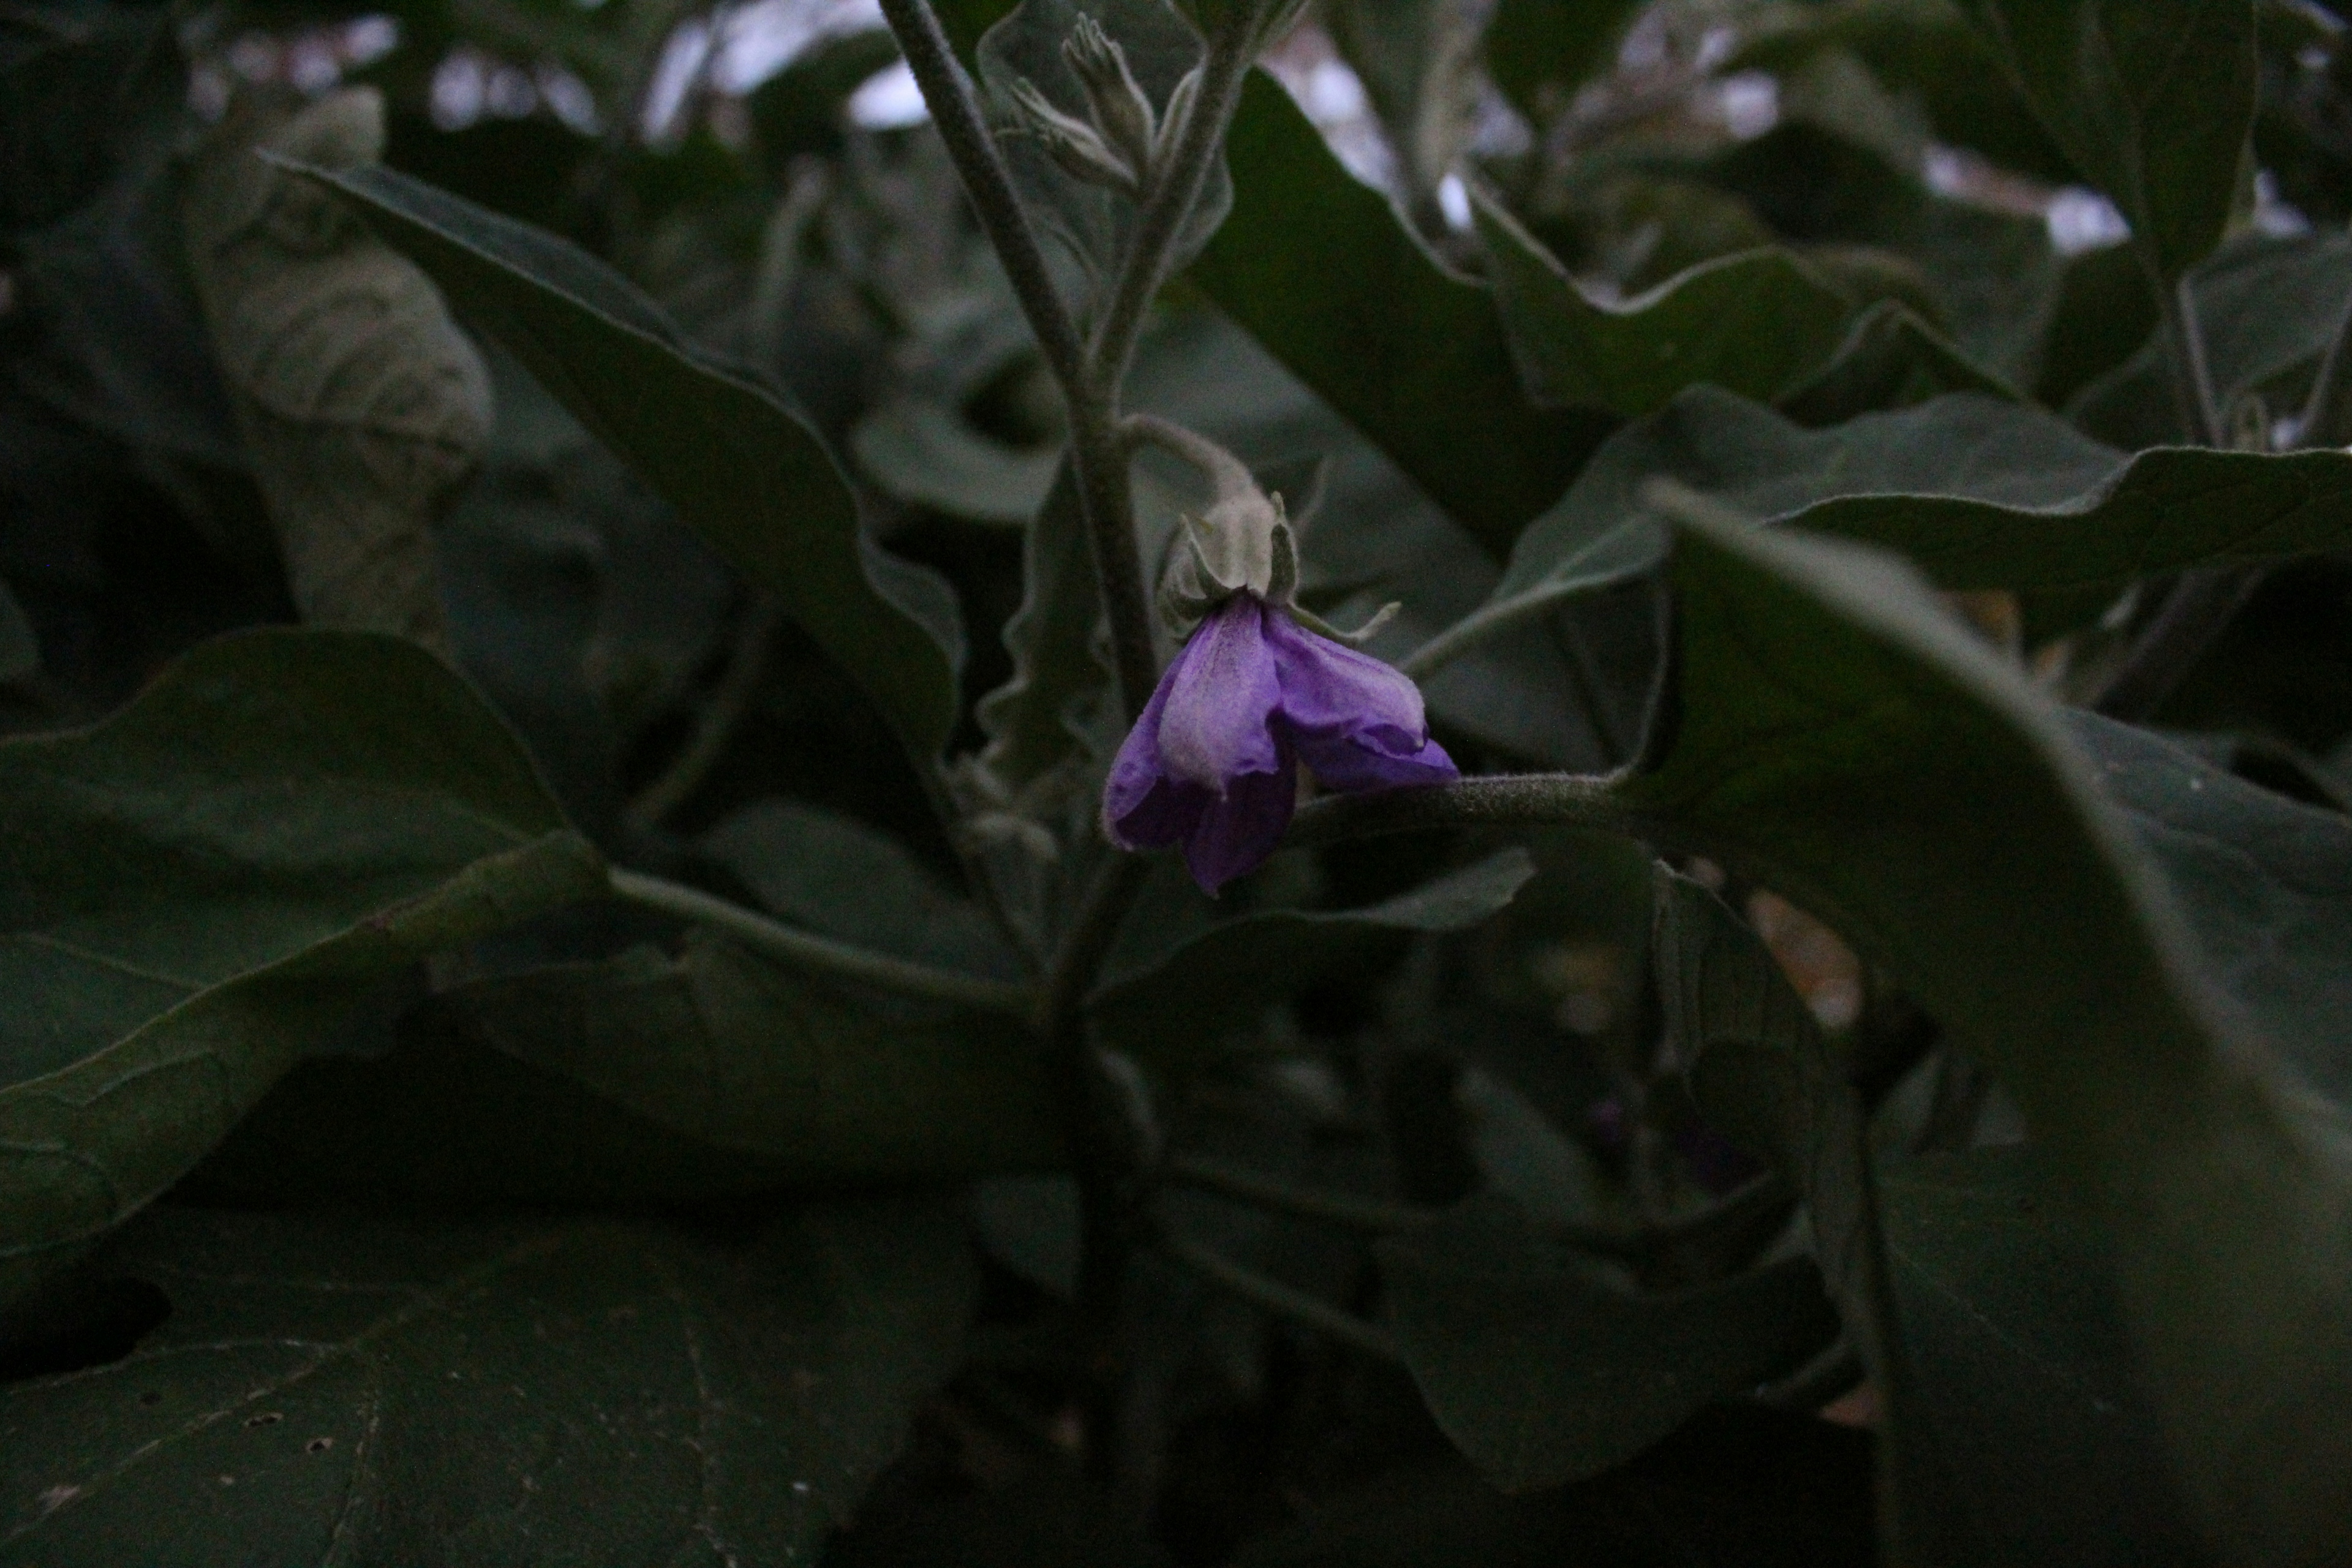 A closeup shot of an eggplant flower shoot.